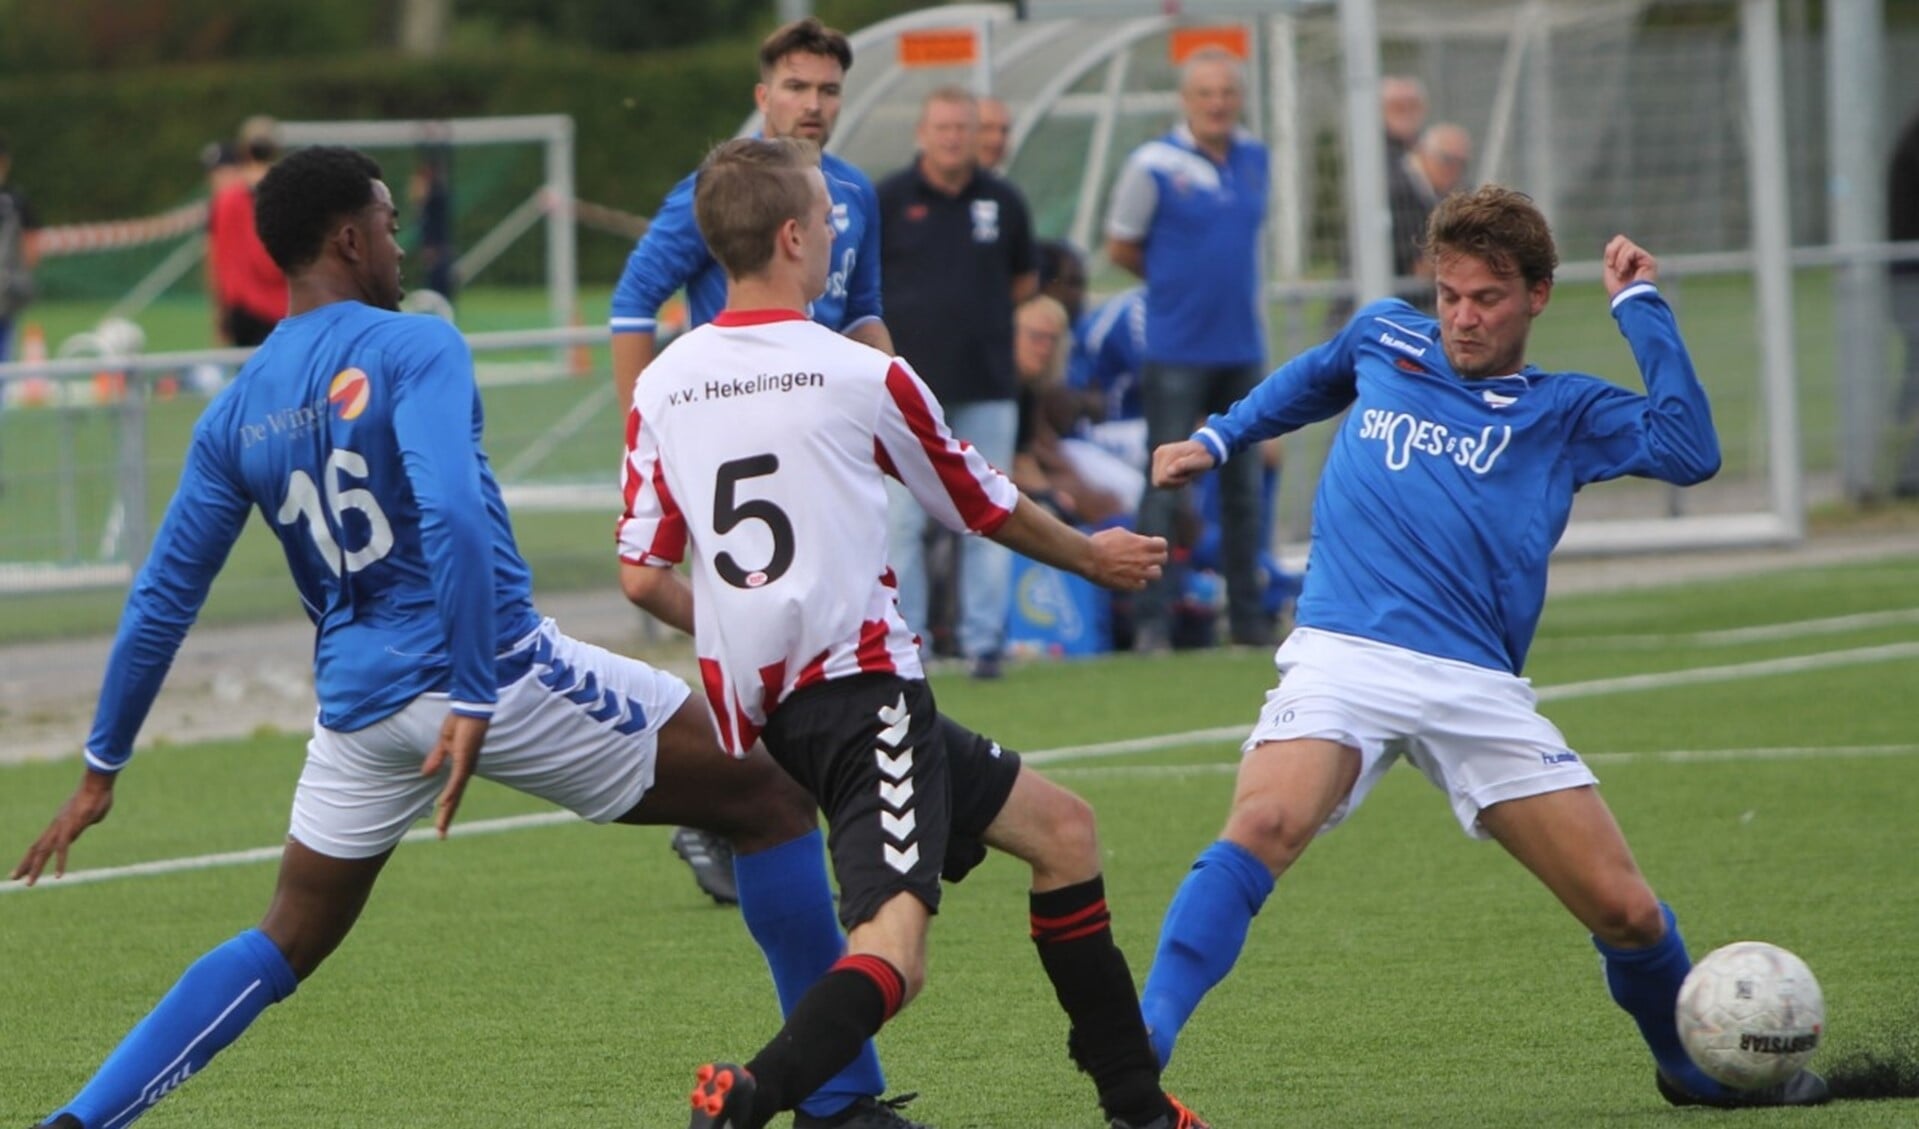 SC Botlek en Hekelingen zijn hier in actie tijdens het Spijkenisse toernooi van vorig jaar bij VV Hekelingen. Archieffoto: Peter de Jong